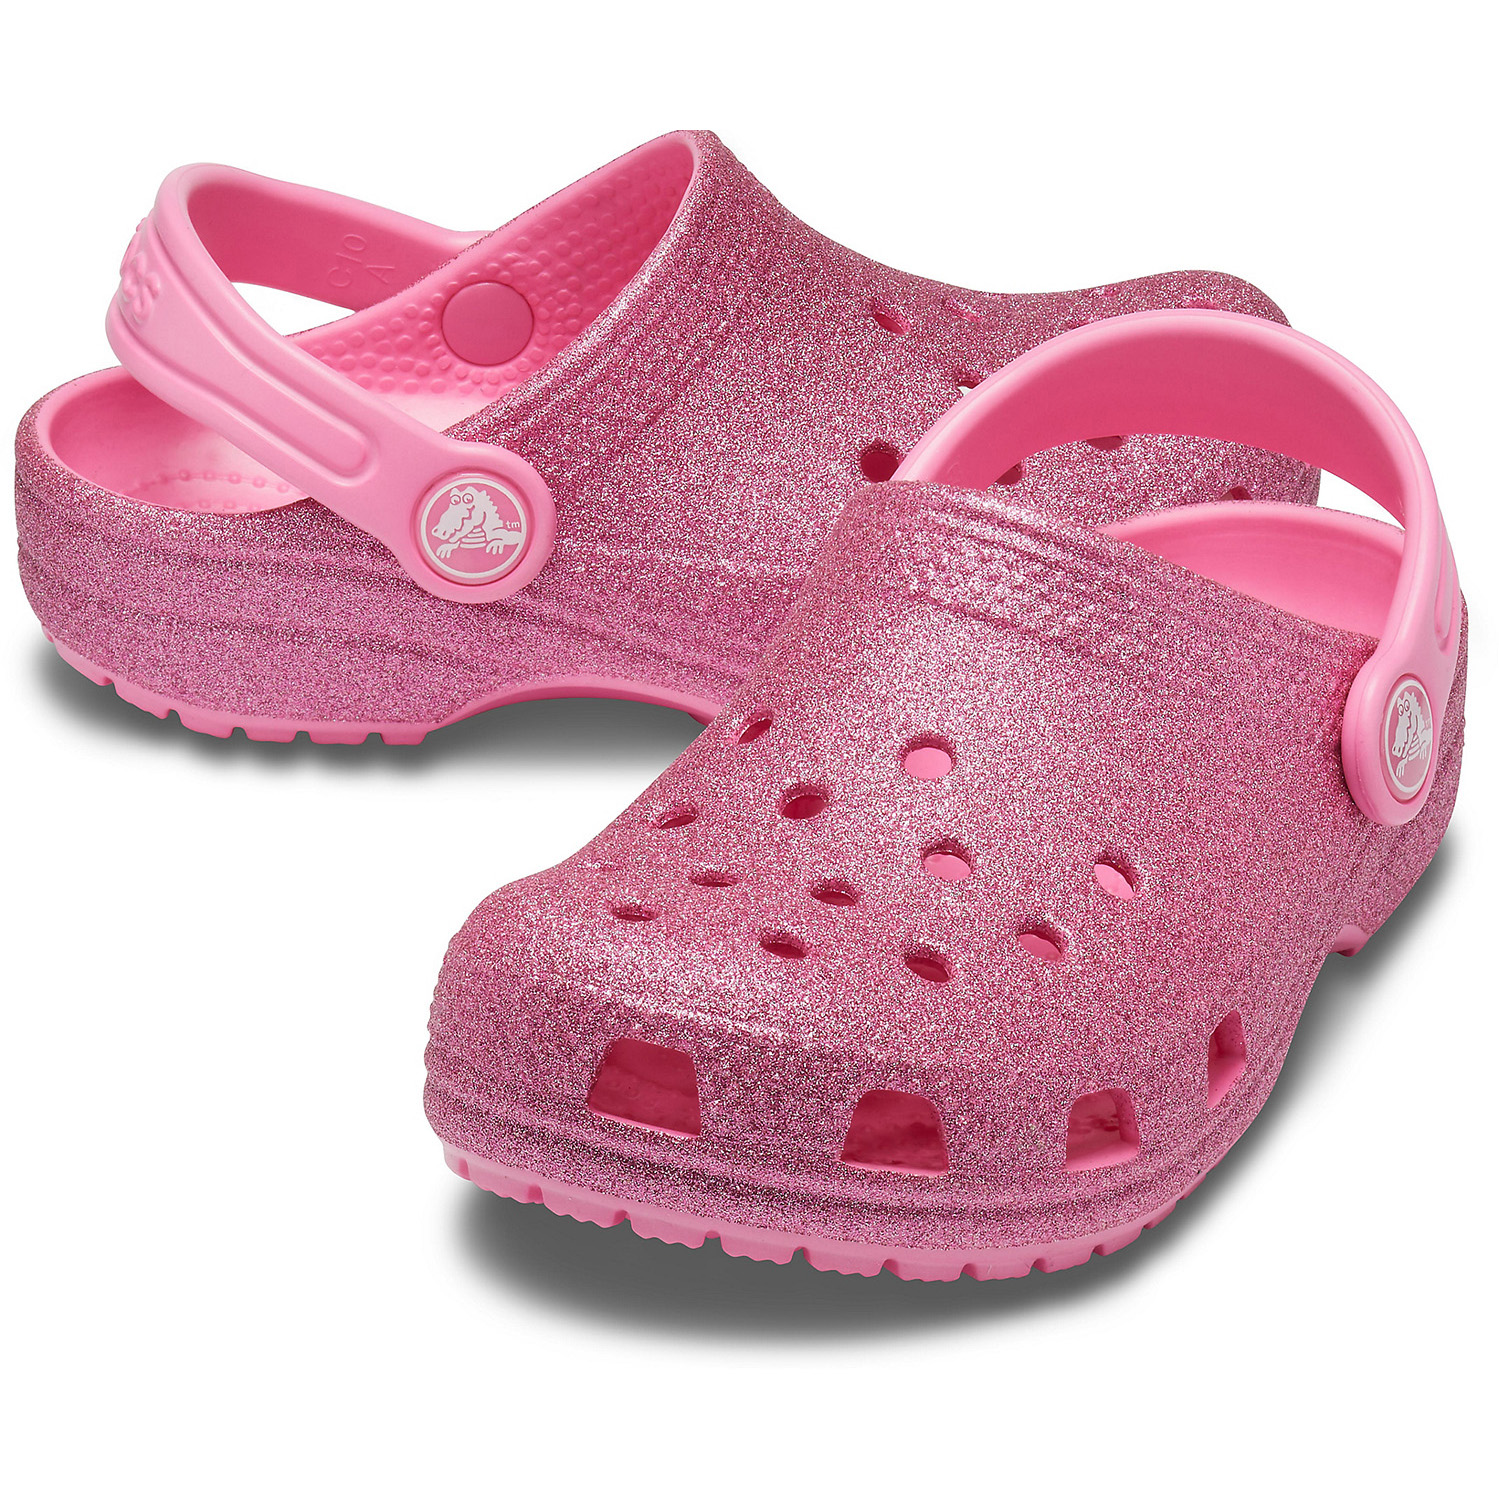 Crocs Classic Glitter Clog K Kinder Clog Roomy Fit 205441-159 pink glitzer